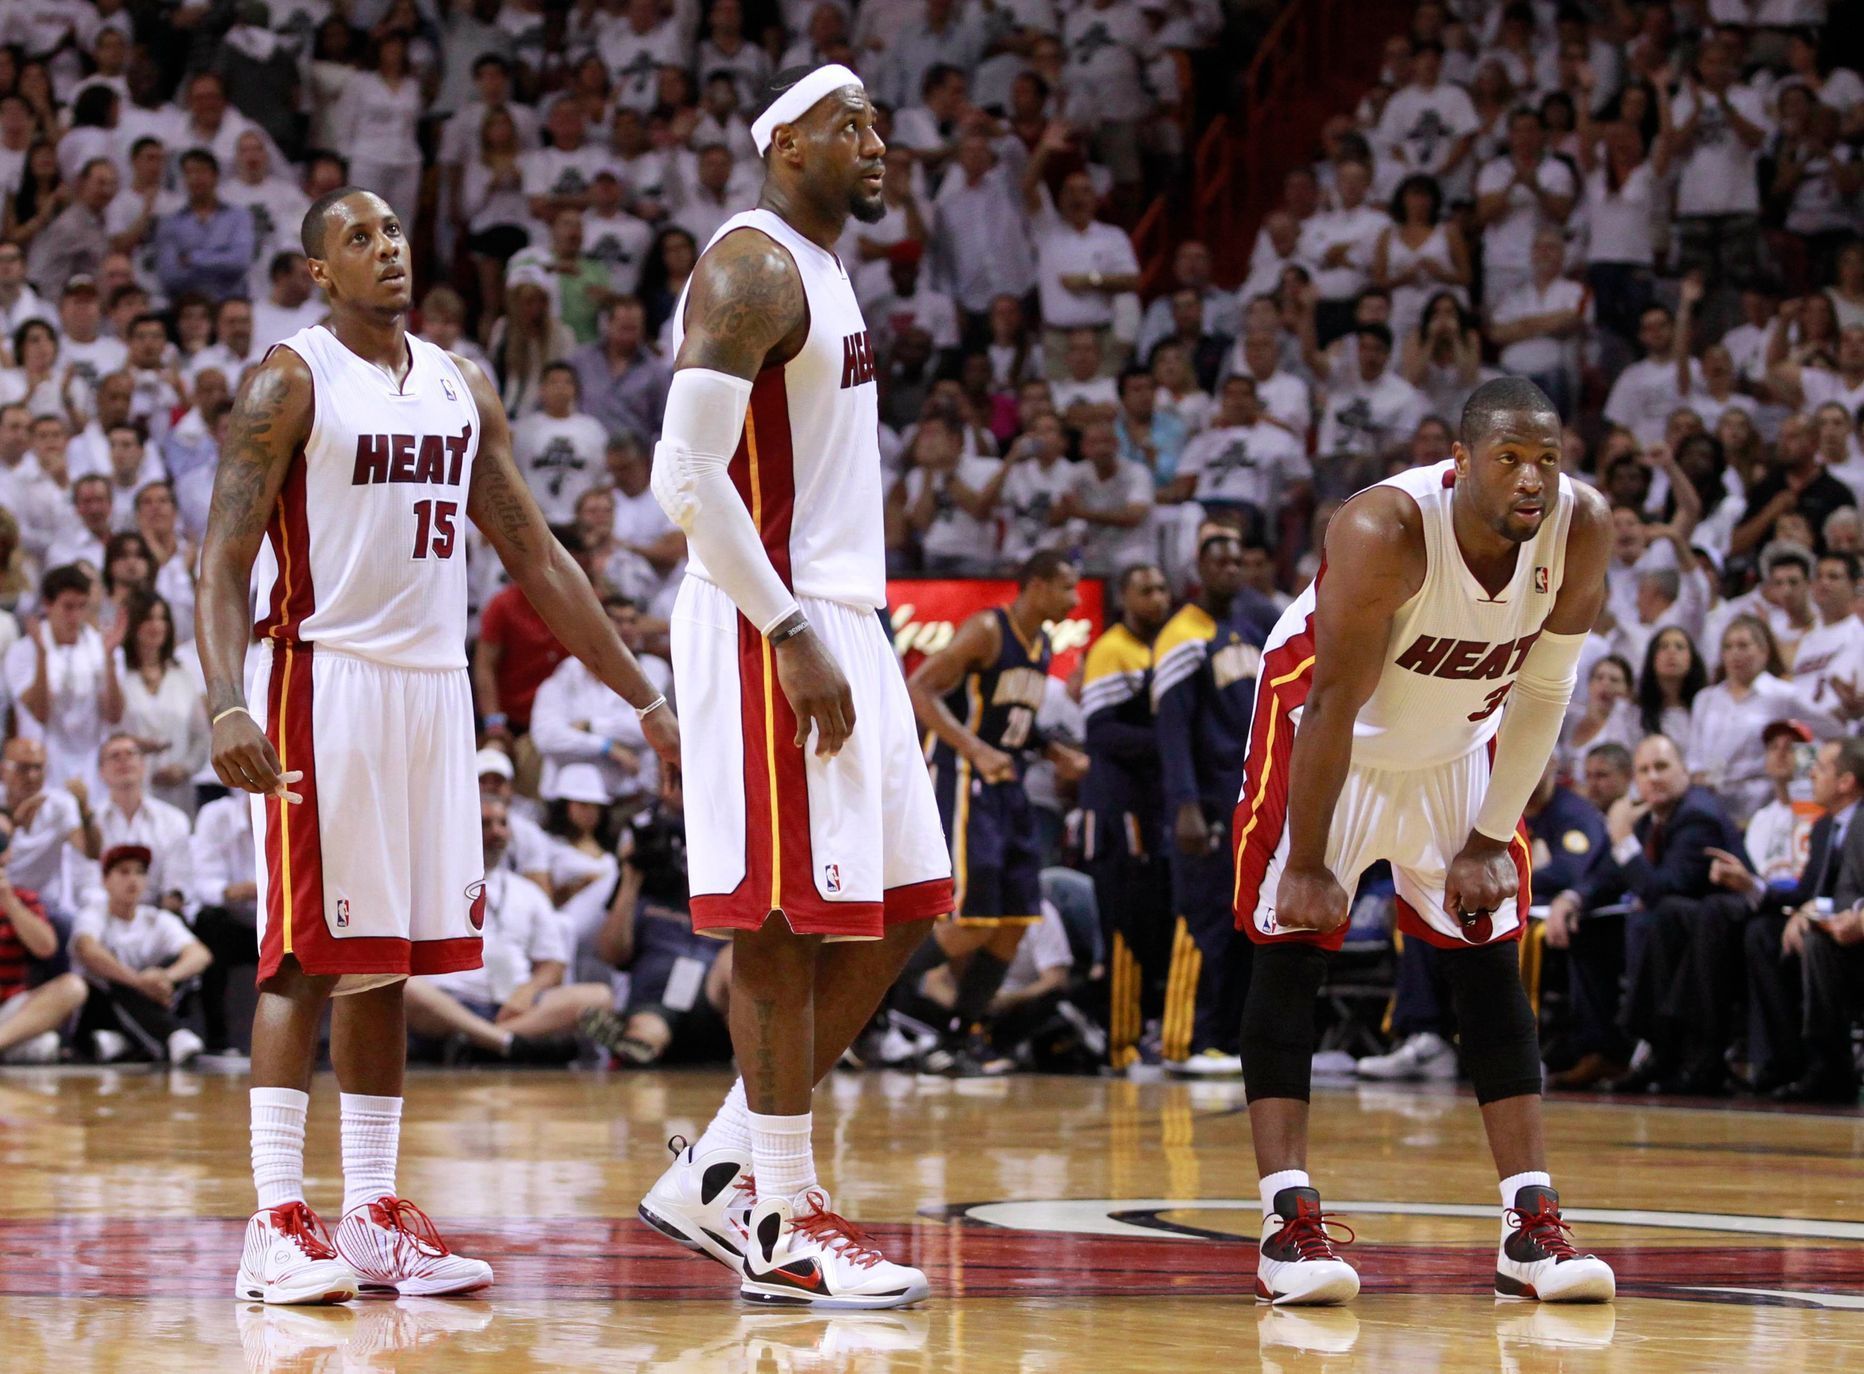 Zklamaní hráči Miami po zápase s Indianou (uprostřed LeBron James, vpravo Dwyane Wade)